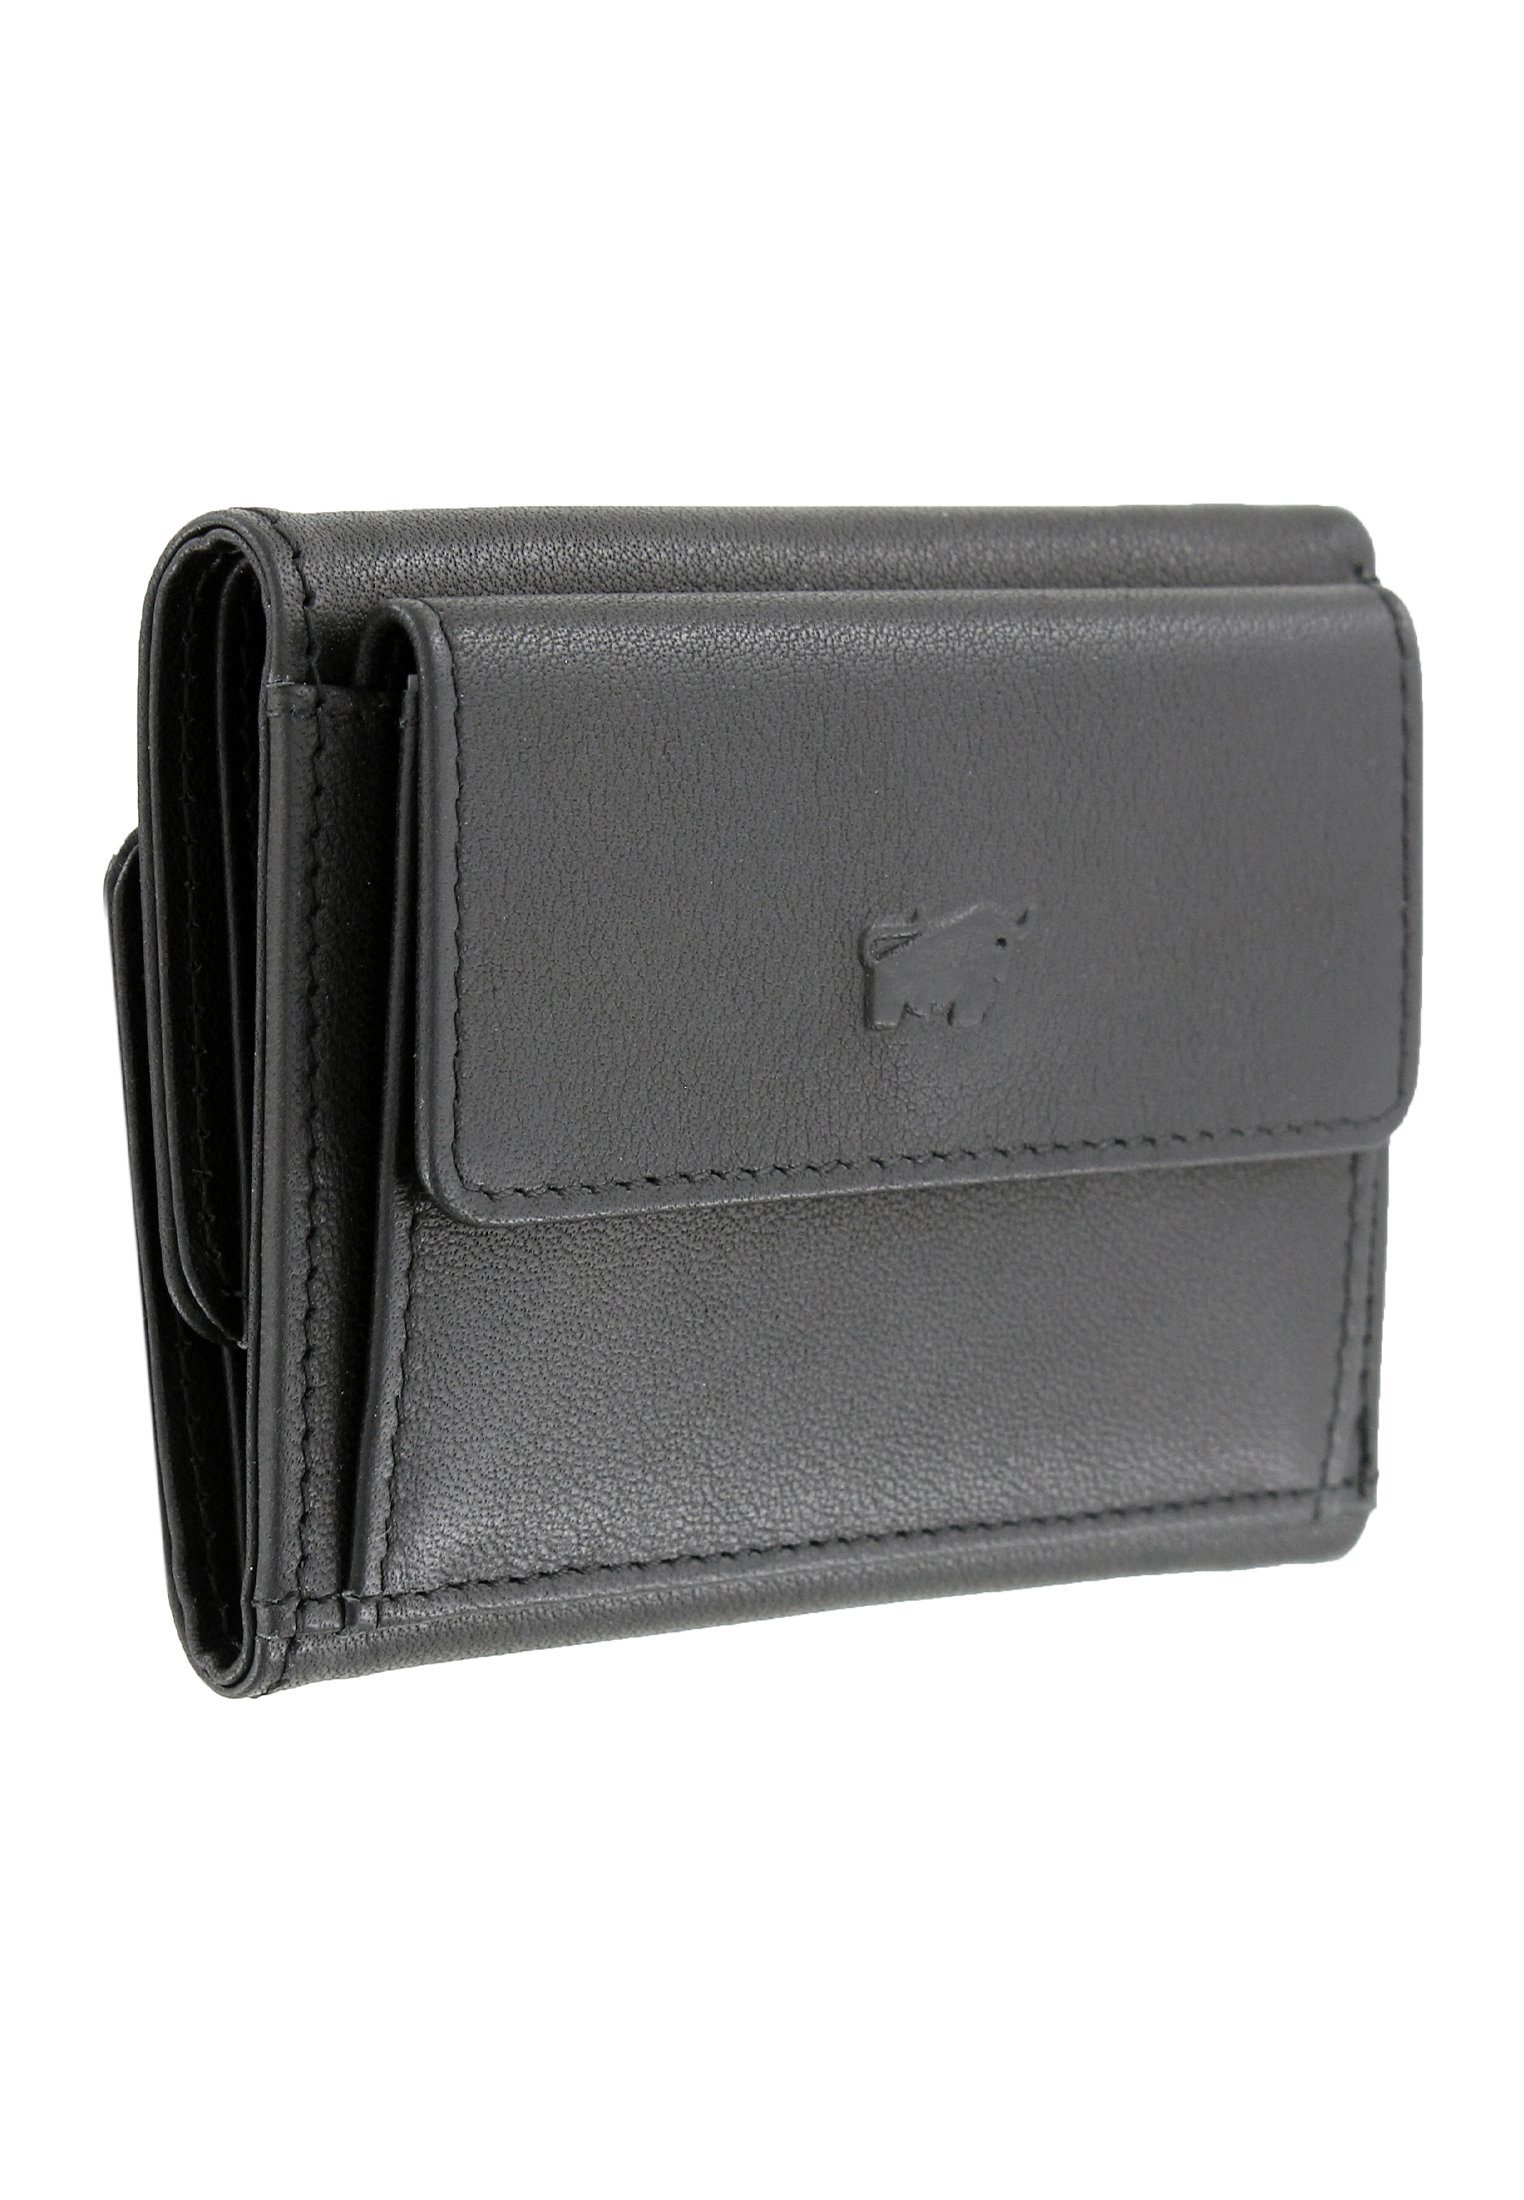 Damen Alle Damentaschen Braun Büffel Mini Geldbörse ARIZONA 2.0 Geldbörse S Flap schwarz, klein und kompakt für Münzen und Schei